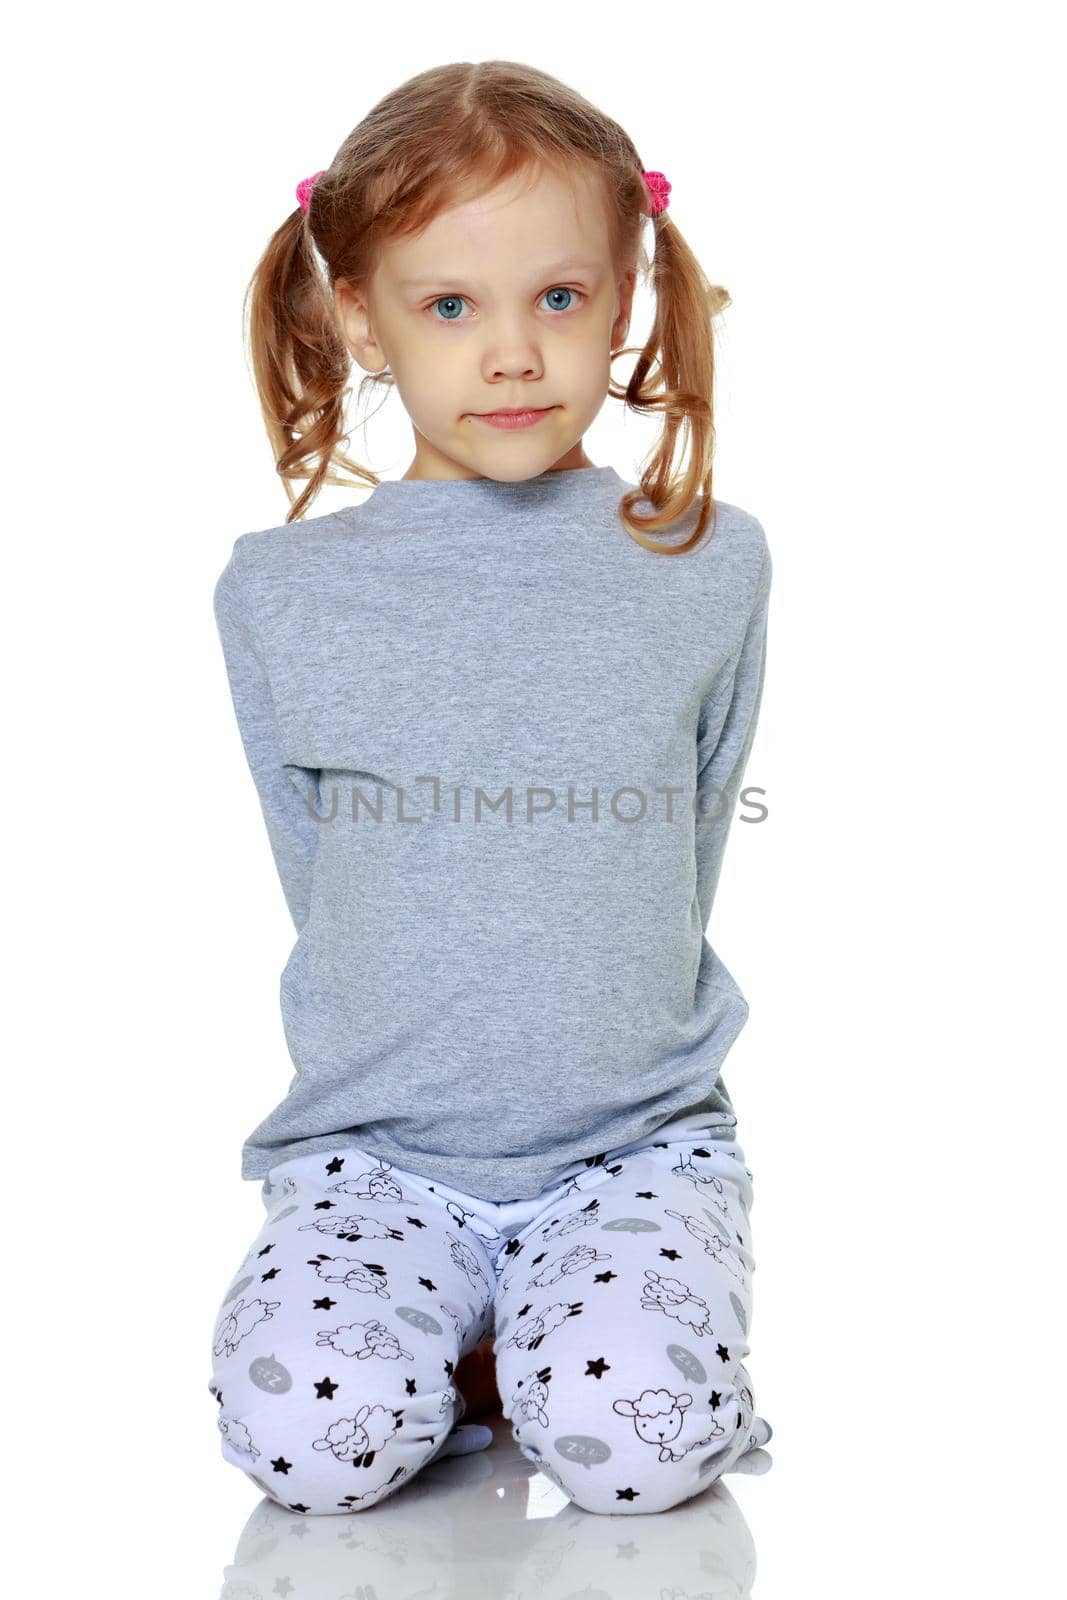 Little girl in pajamas. by kolesnikov_studio